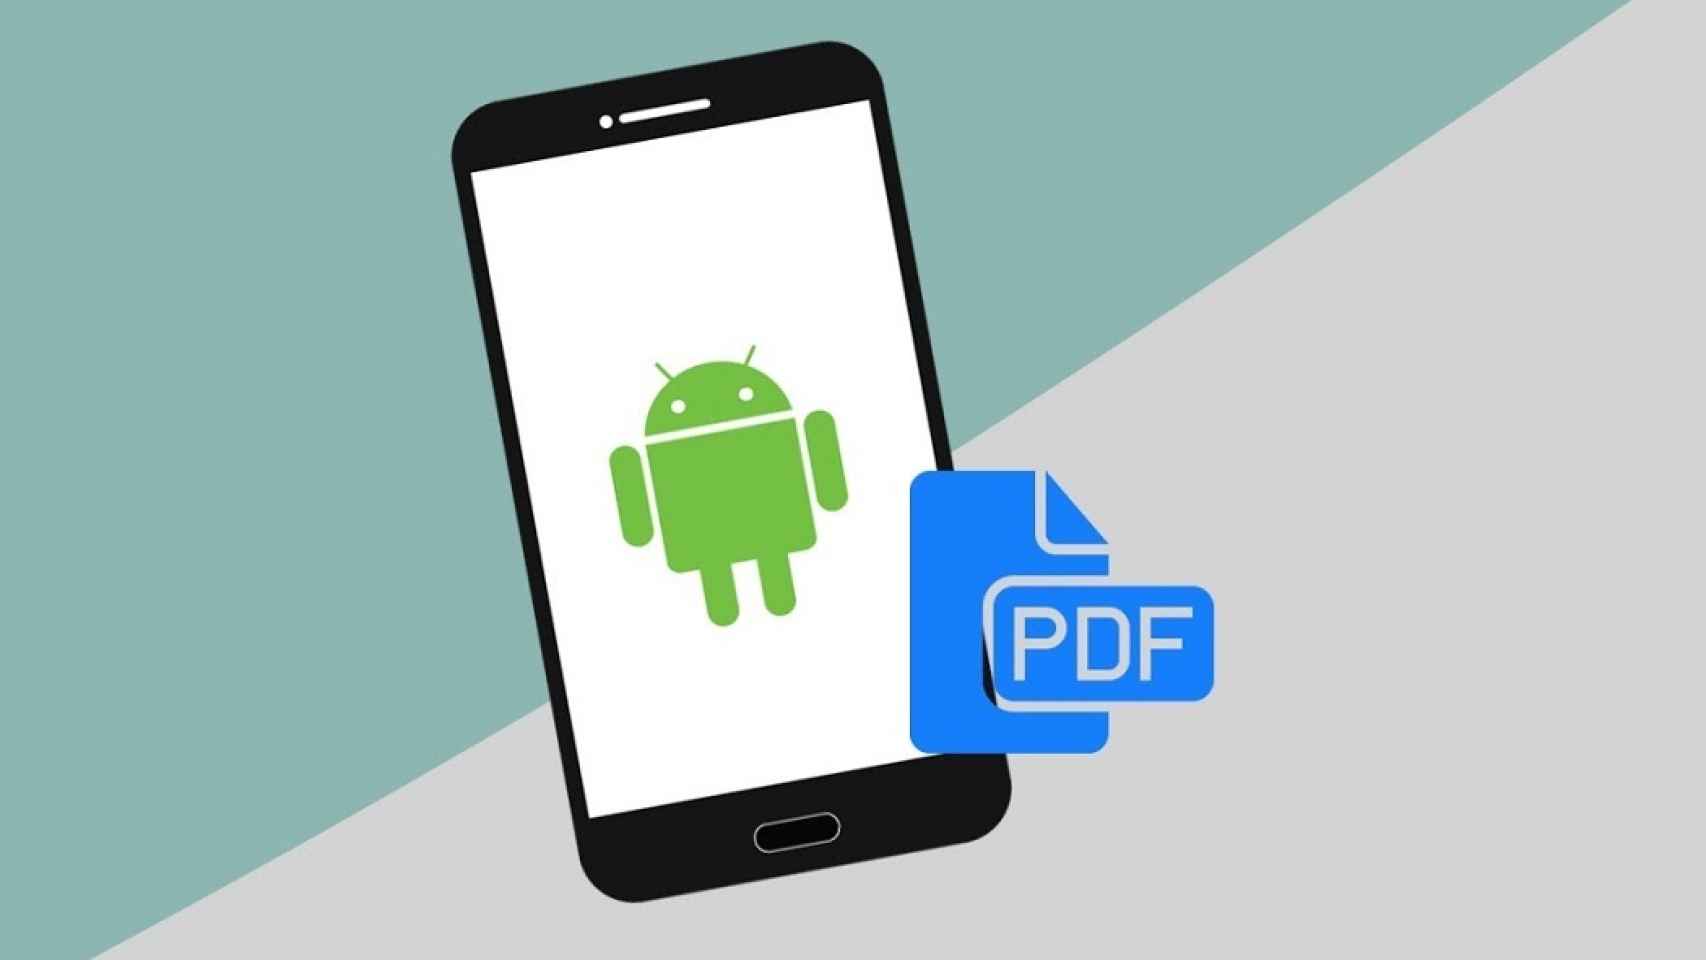 Cómo convertir archivos JPG a PDF en móviles Android: aplicaciones, webs...